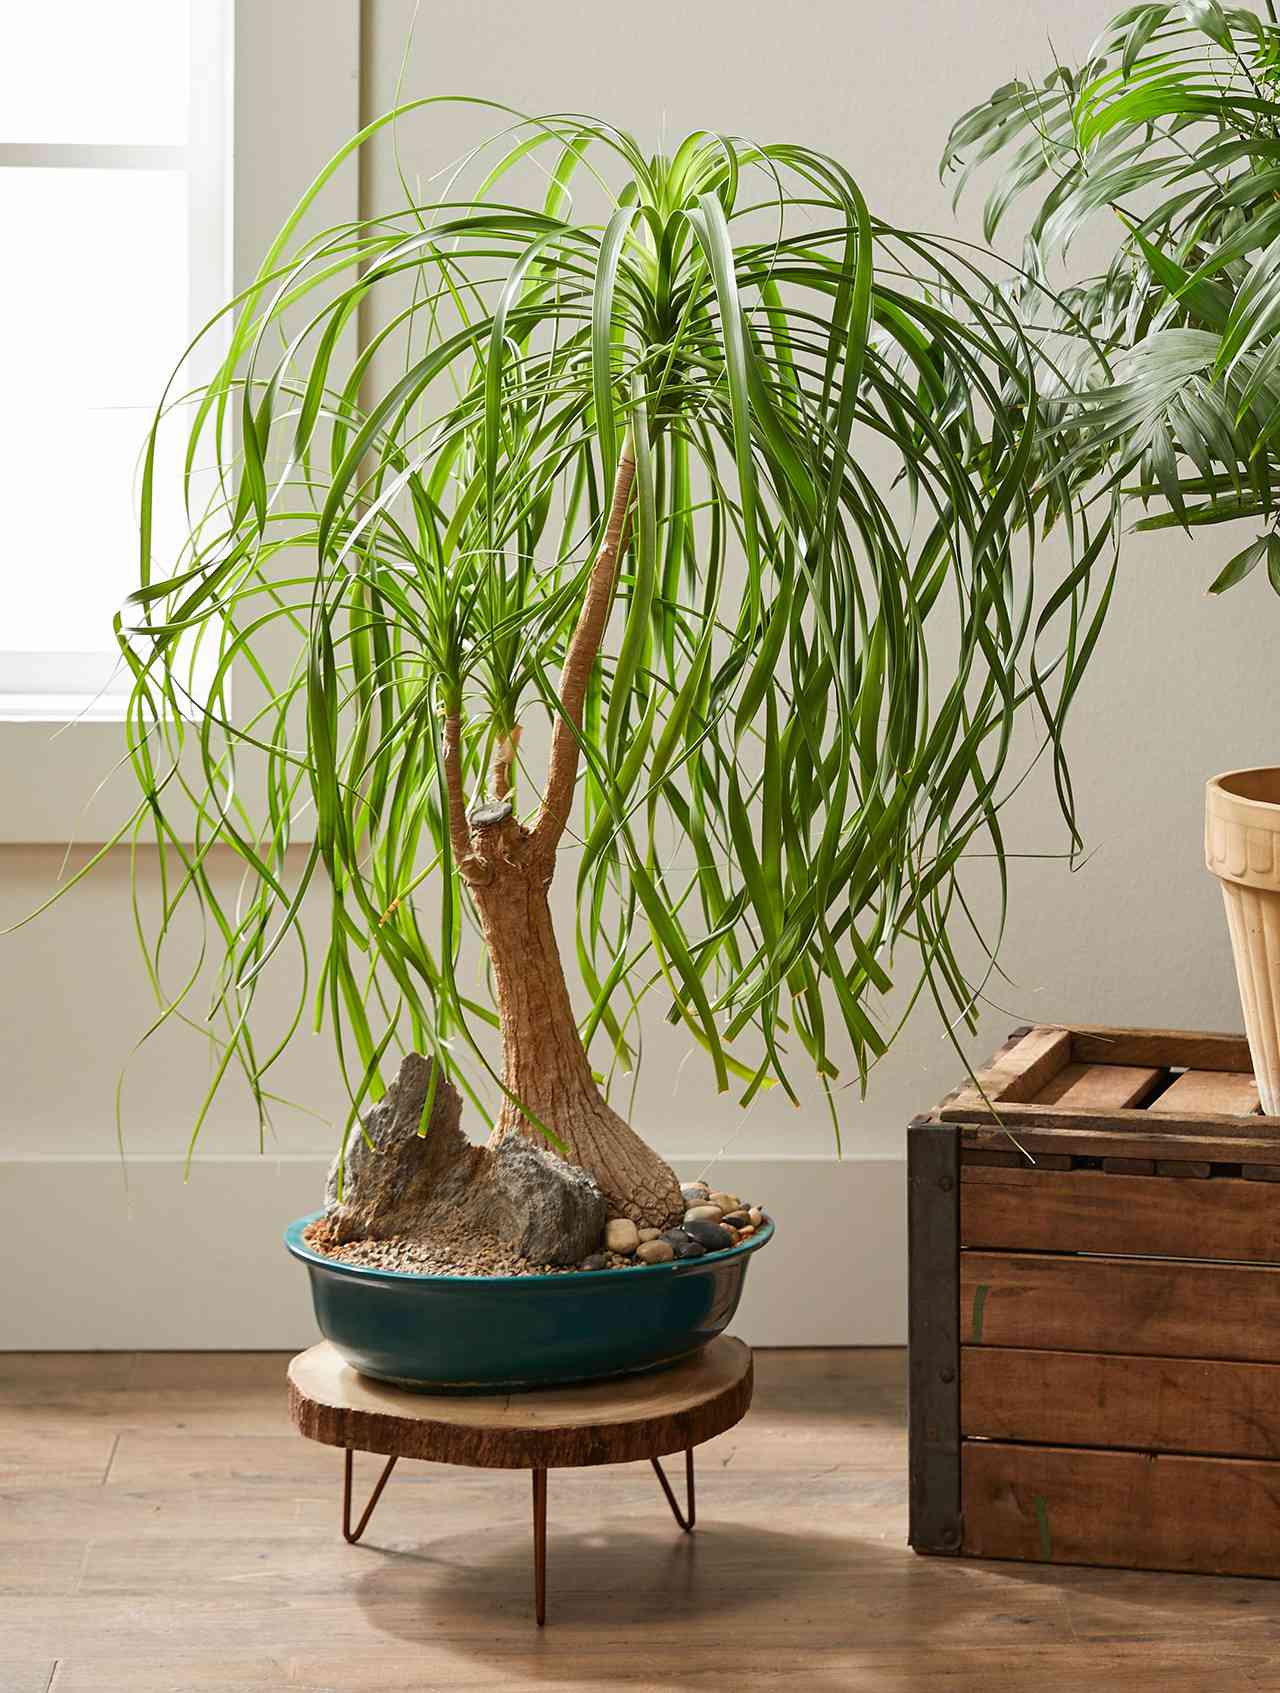 Drought tolerant indoor hanging plants